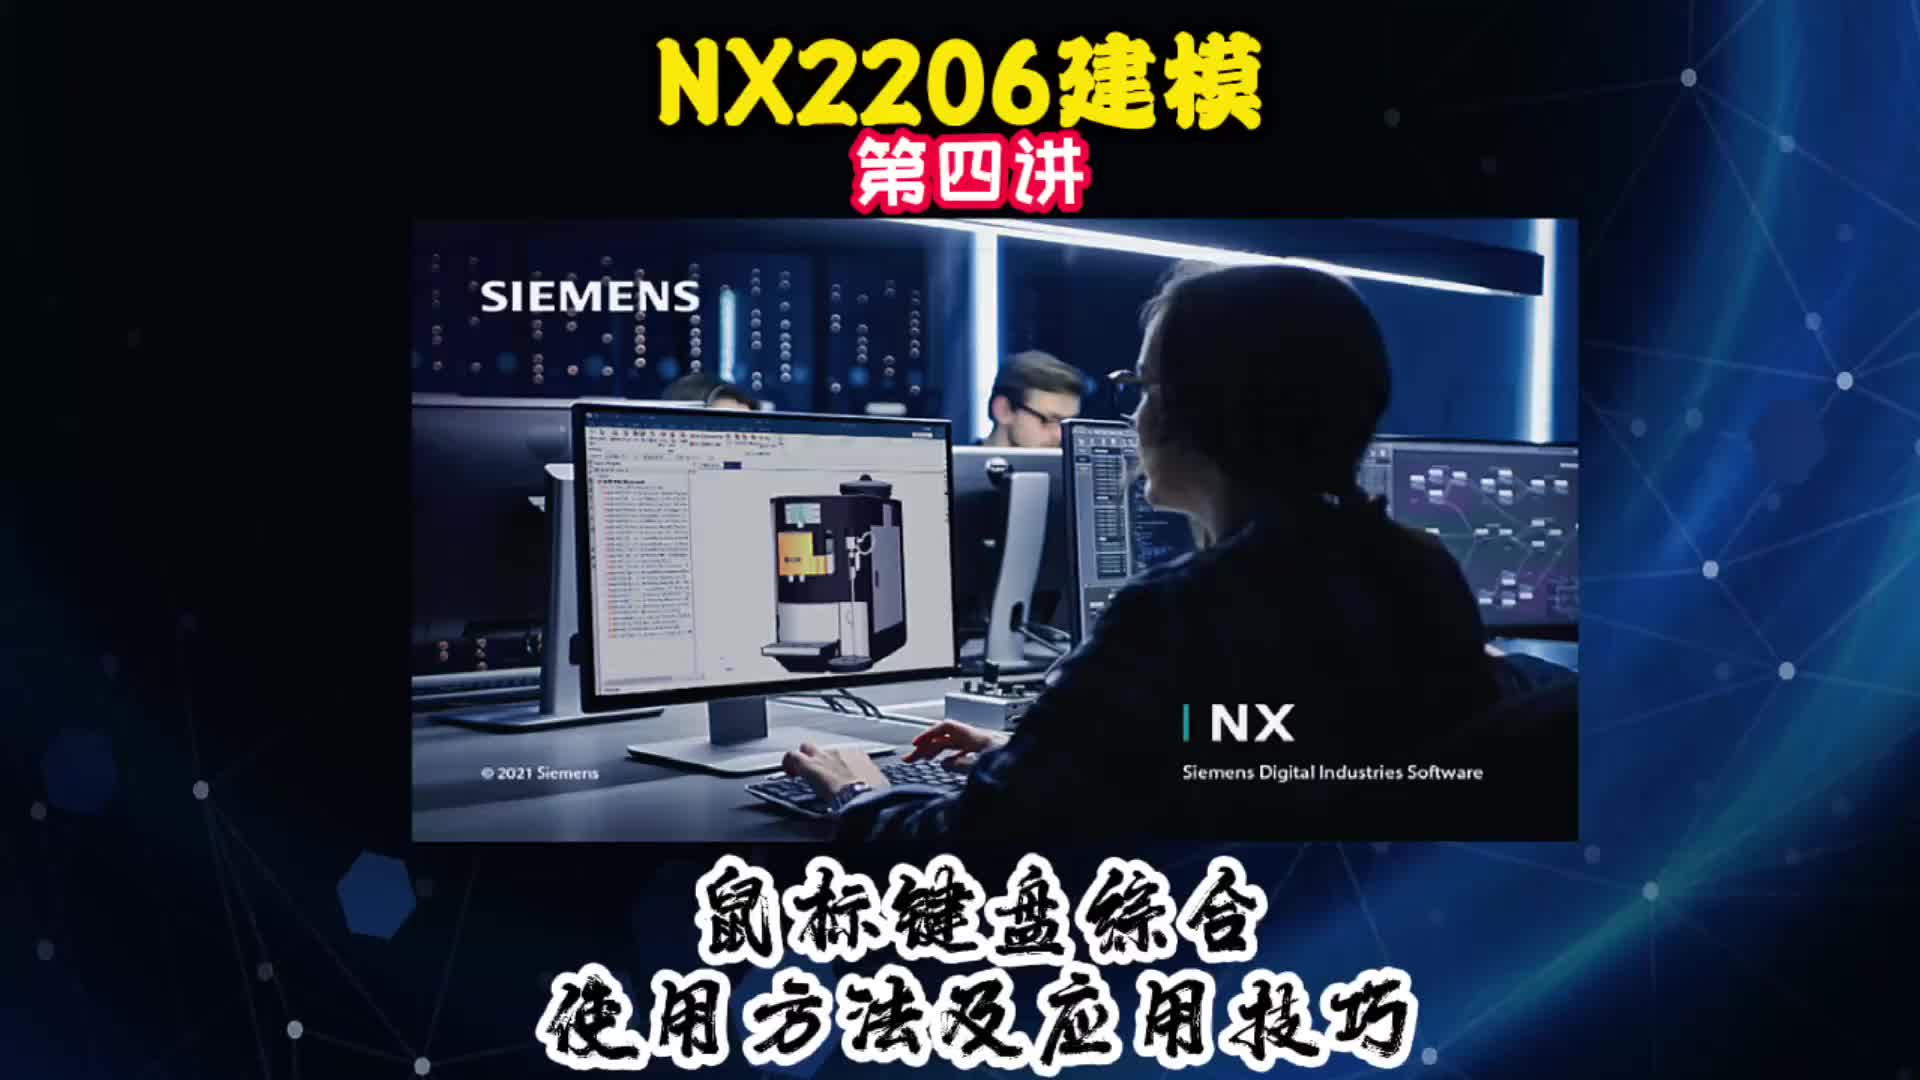 NX2206建模—鼠标键盘综合使用方法及应用技巧